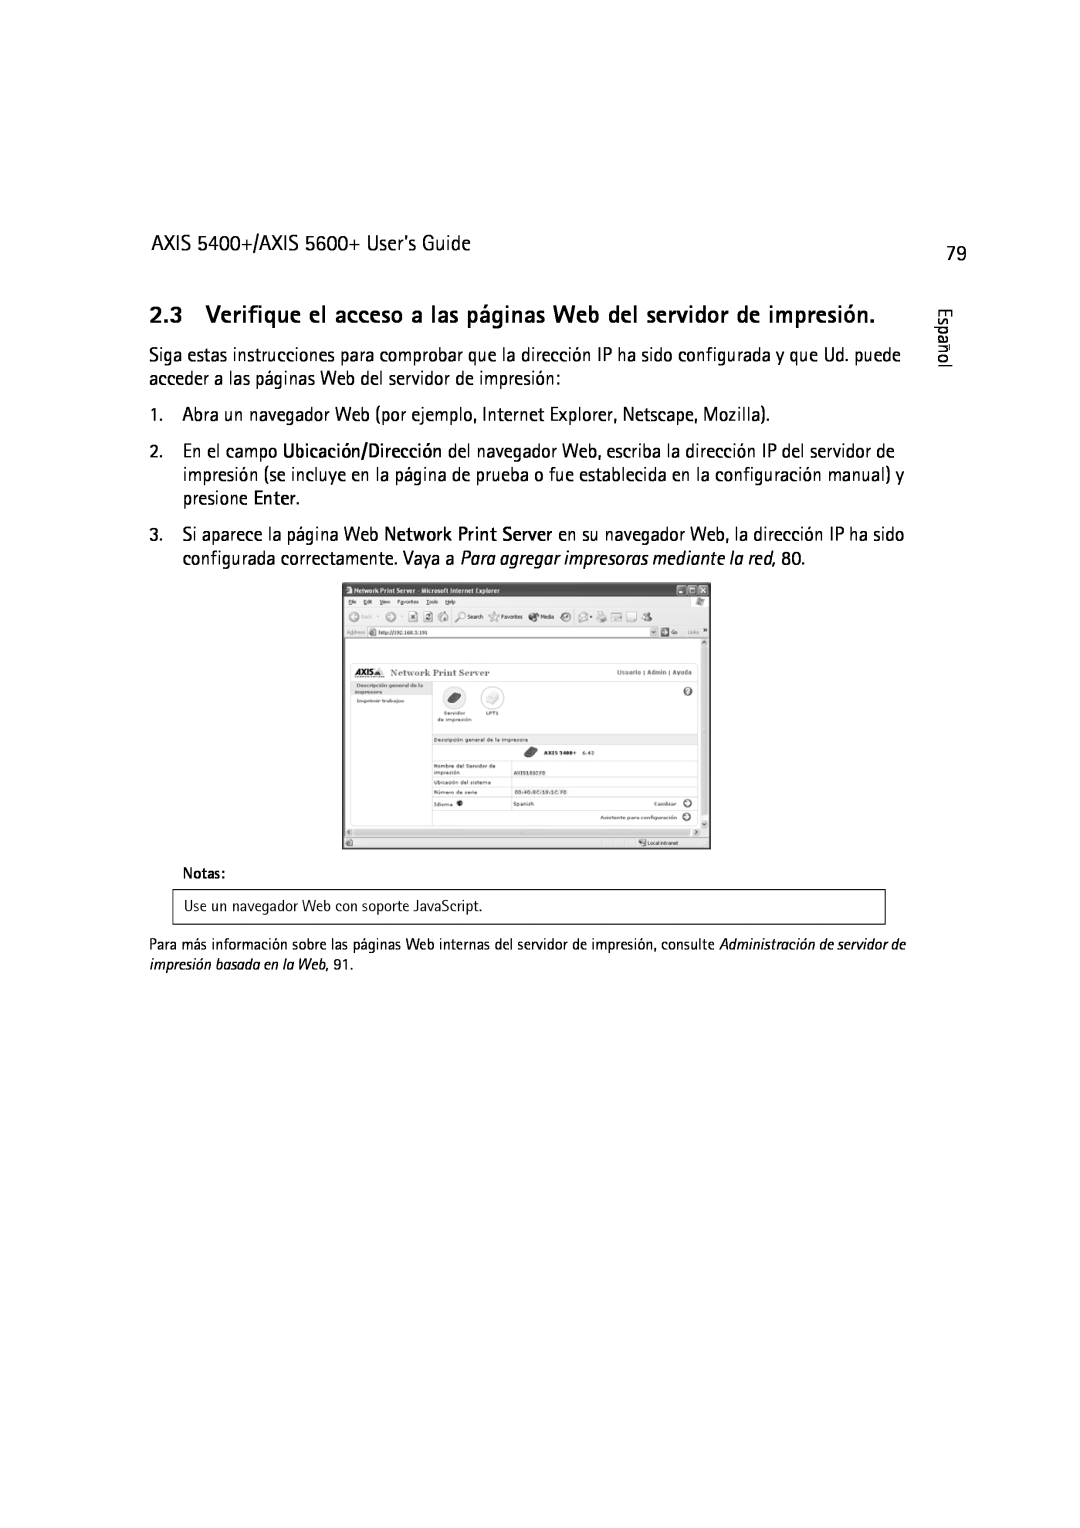 Dell manual Verifique el acceso a las páginas Web del servidor de impresión, AXIS 5400+/AXIS 5600+ User’s Guide 